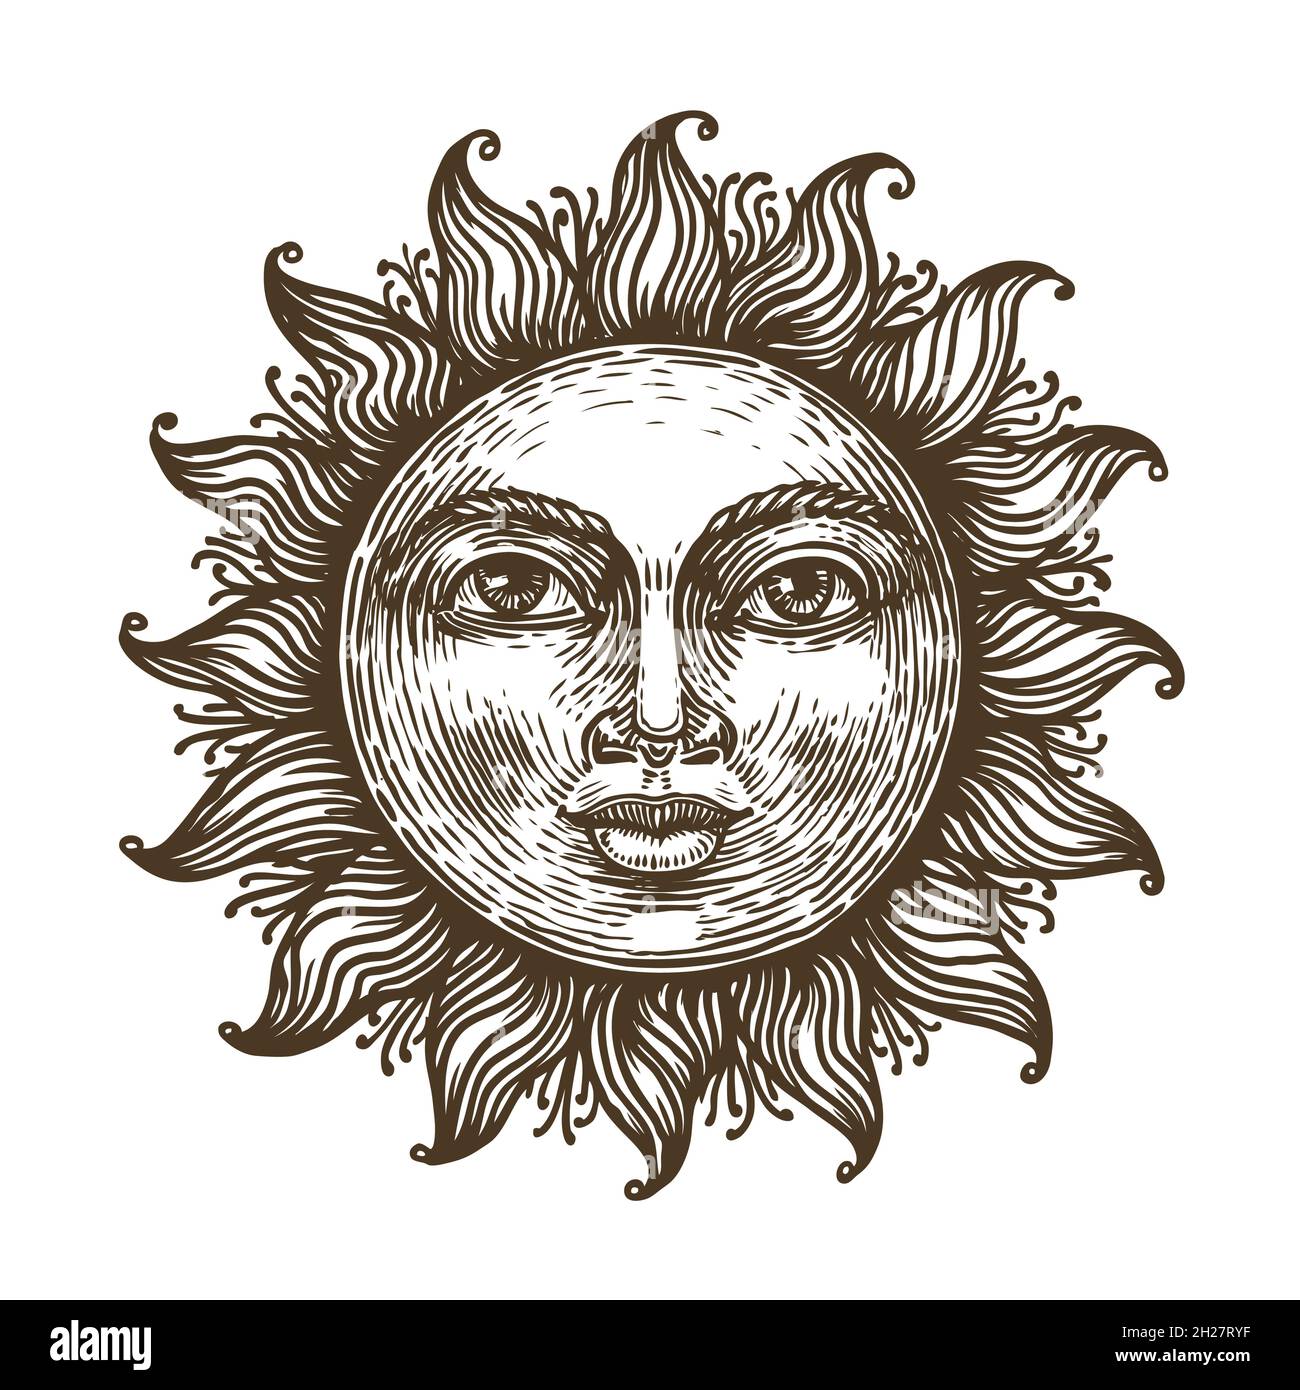 Soleil dessiné à la main avec le visage stylisé comme gravure.Symbole d'astrologie.Imprimer pour, cartes, élément de décoration Illustration de Vecteur